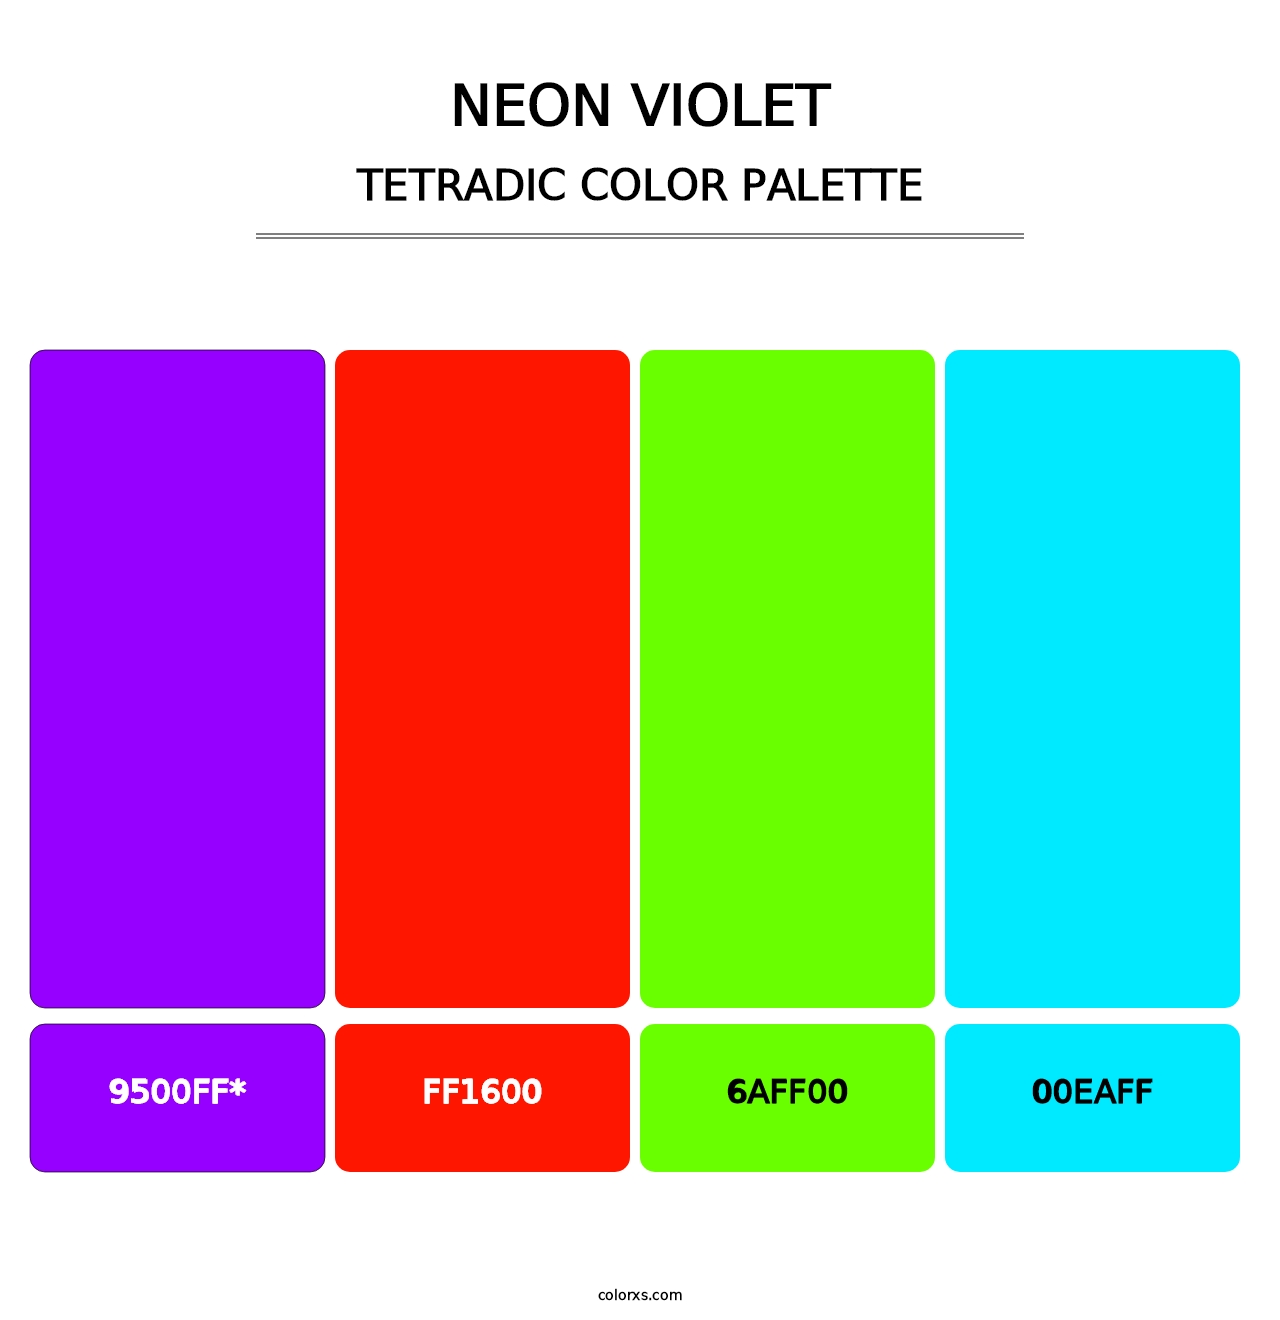 Neon Violet - Tetradic Color Palette